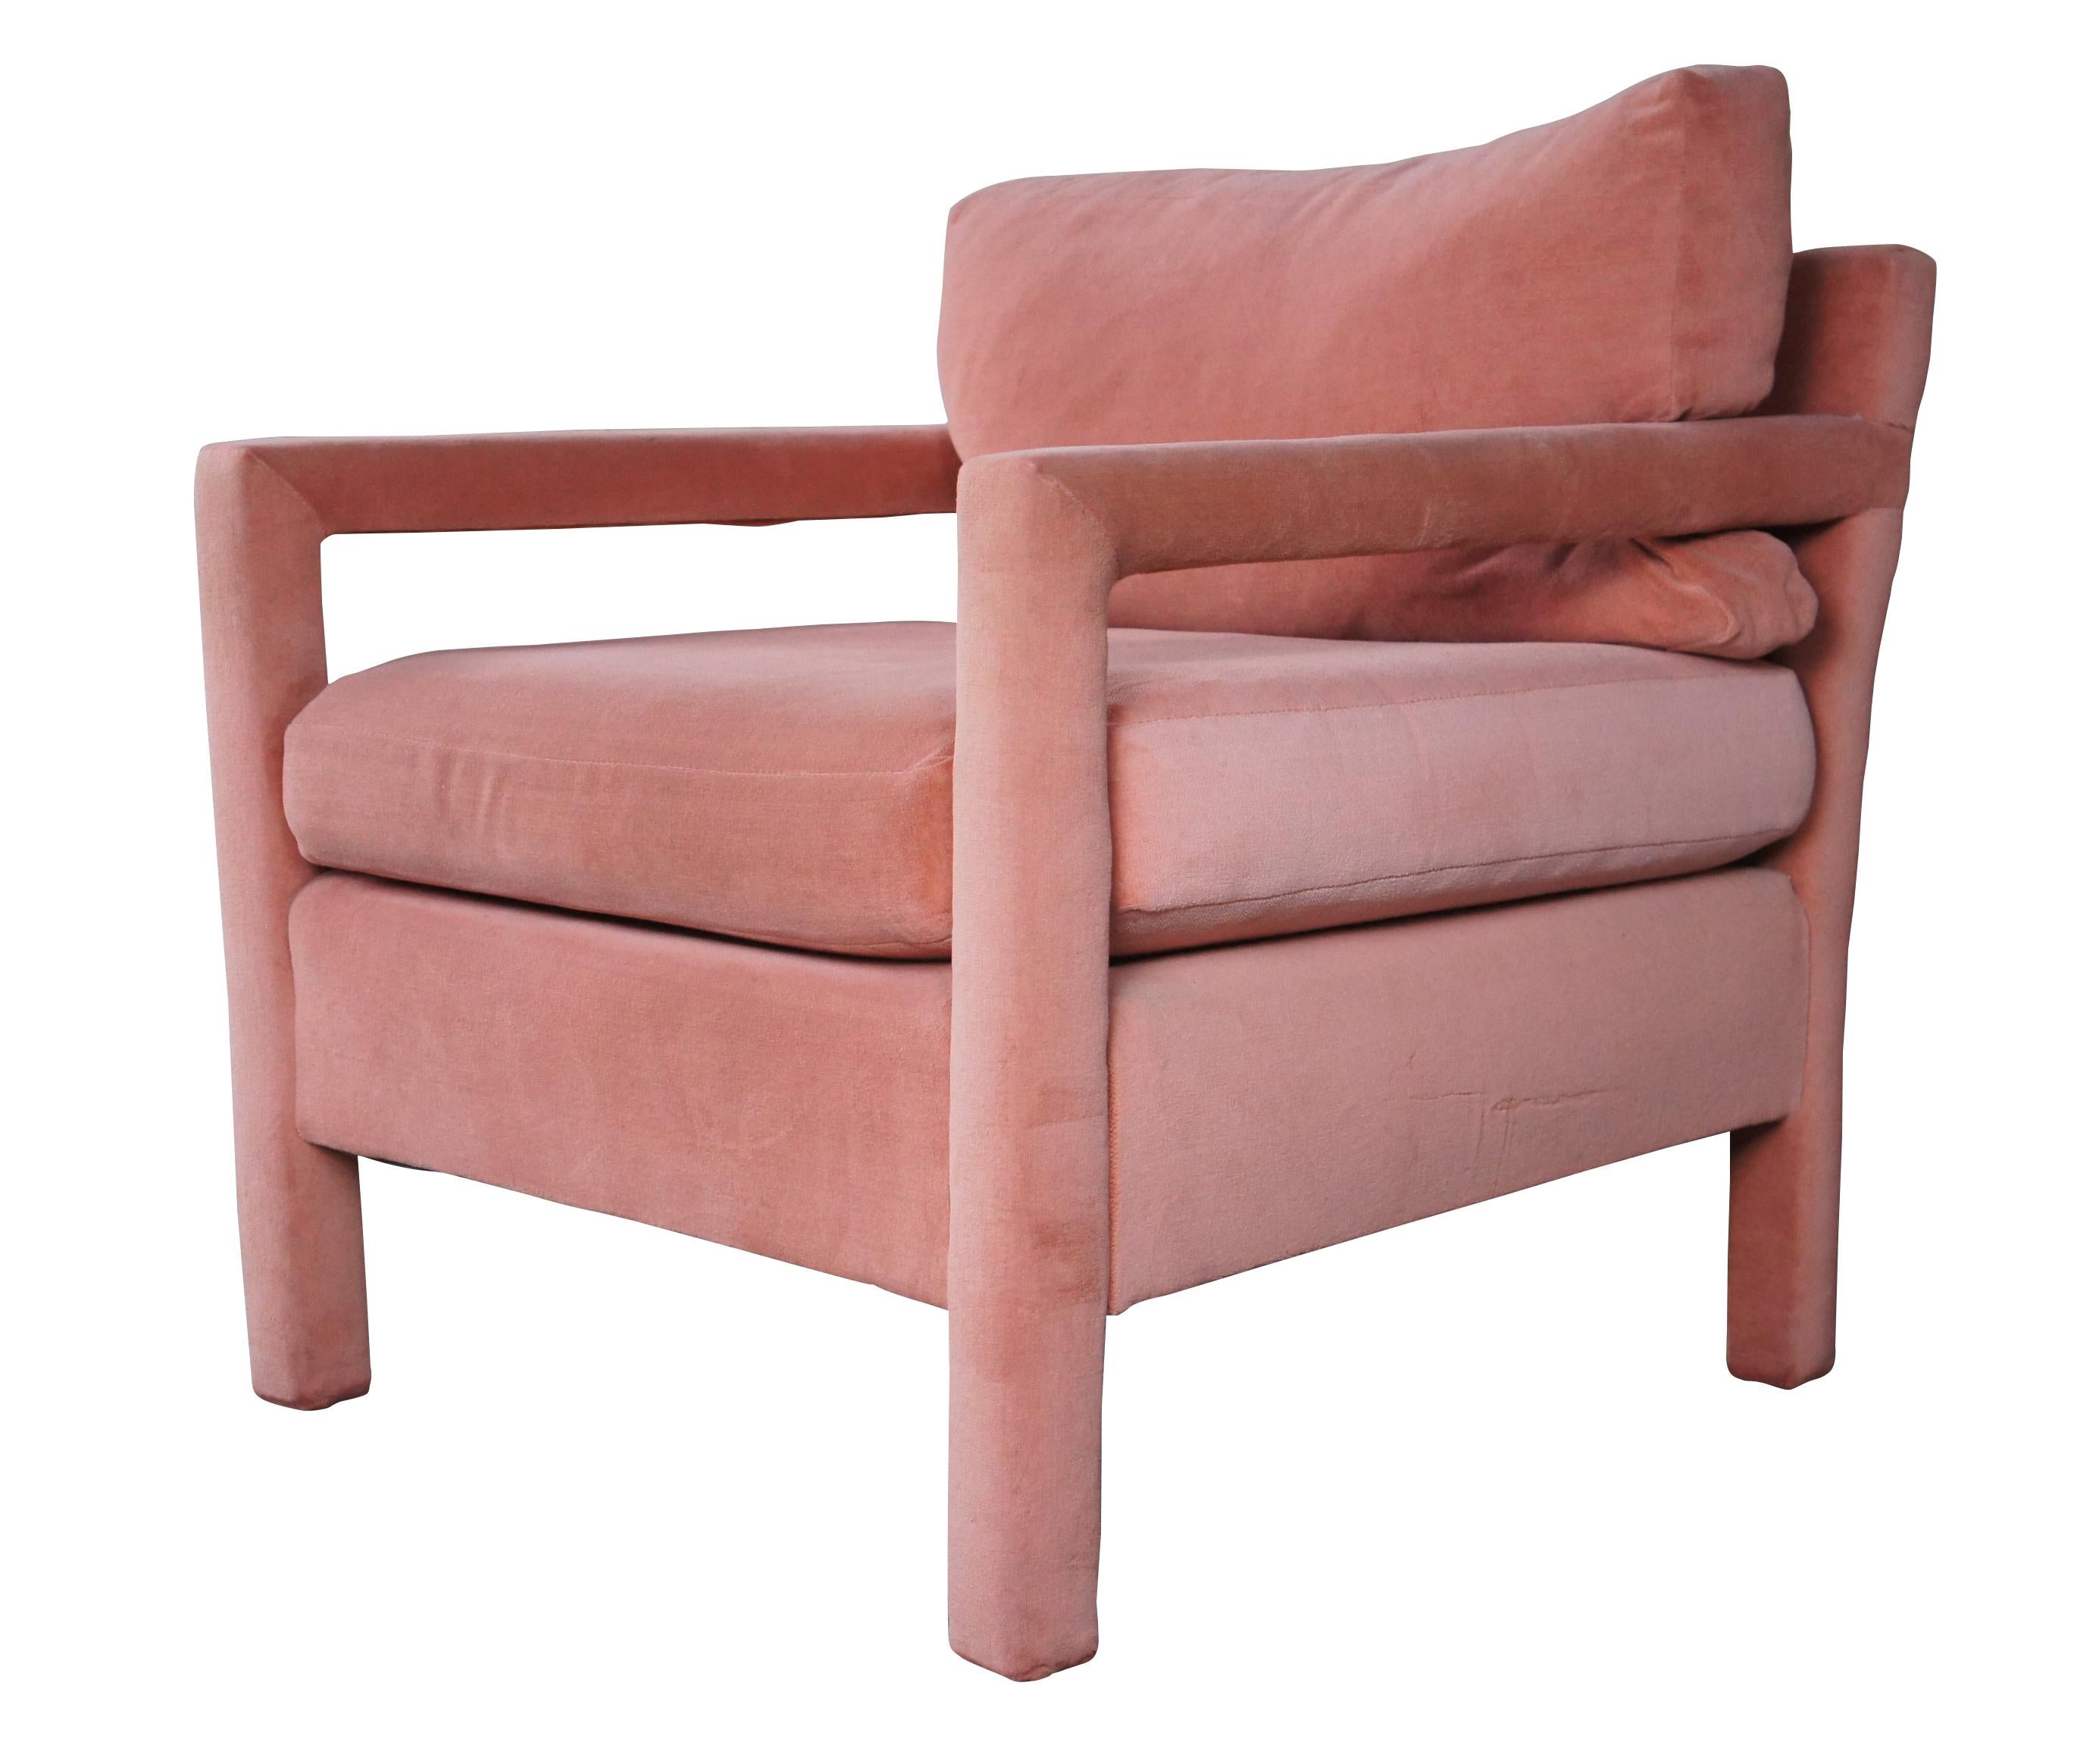 Ein auffälliger Stuhl im Parsons-Stil, der Milo Baughman für Thayer Coggins zugeschrieben wird, ca. 1970er Jahre.  Der würfelförmige Rahmen ist mit edlem rosa Mohair gepolstert.